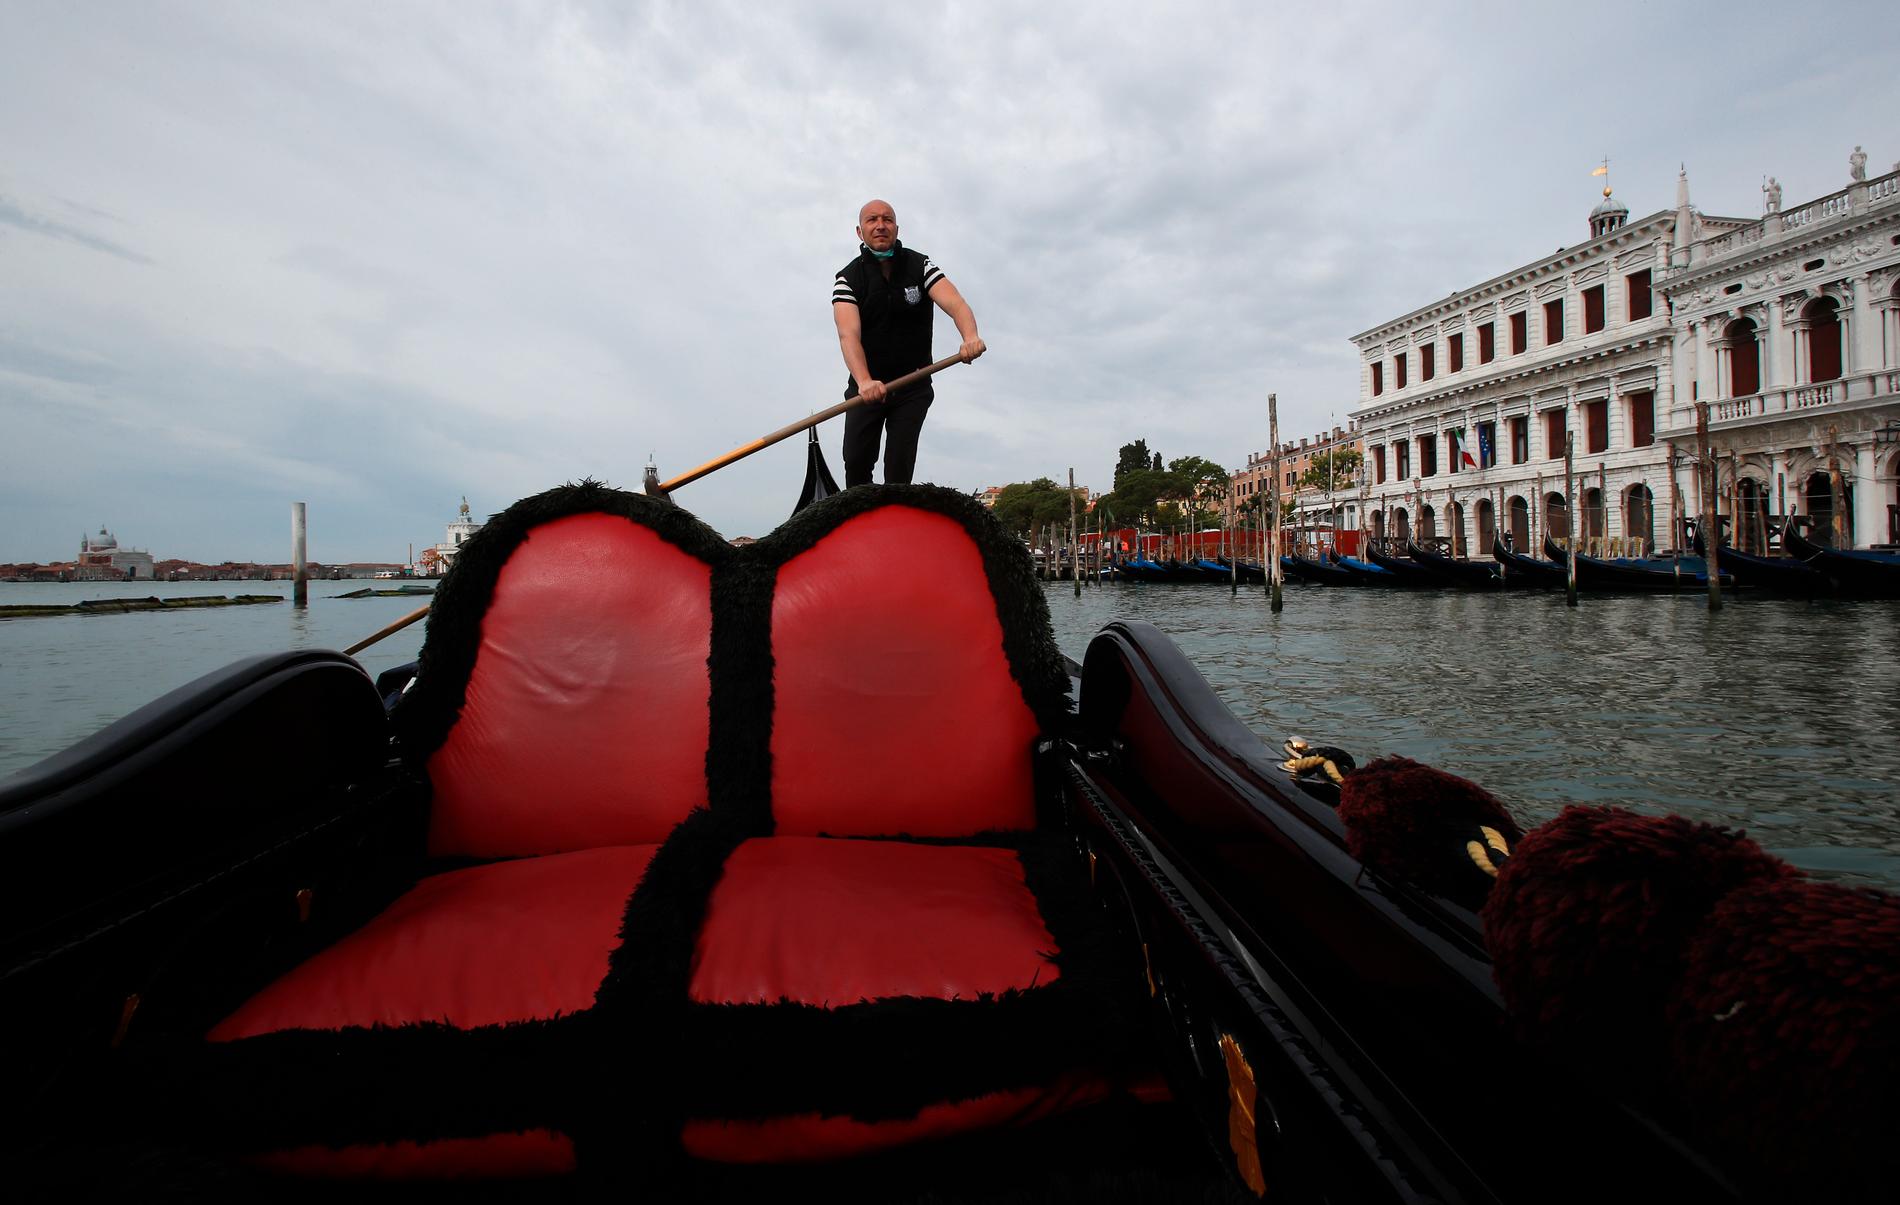 Venezia chiede ai turisti di tornare per salvare i mezzi di sussistenza delle persone – E24